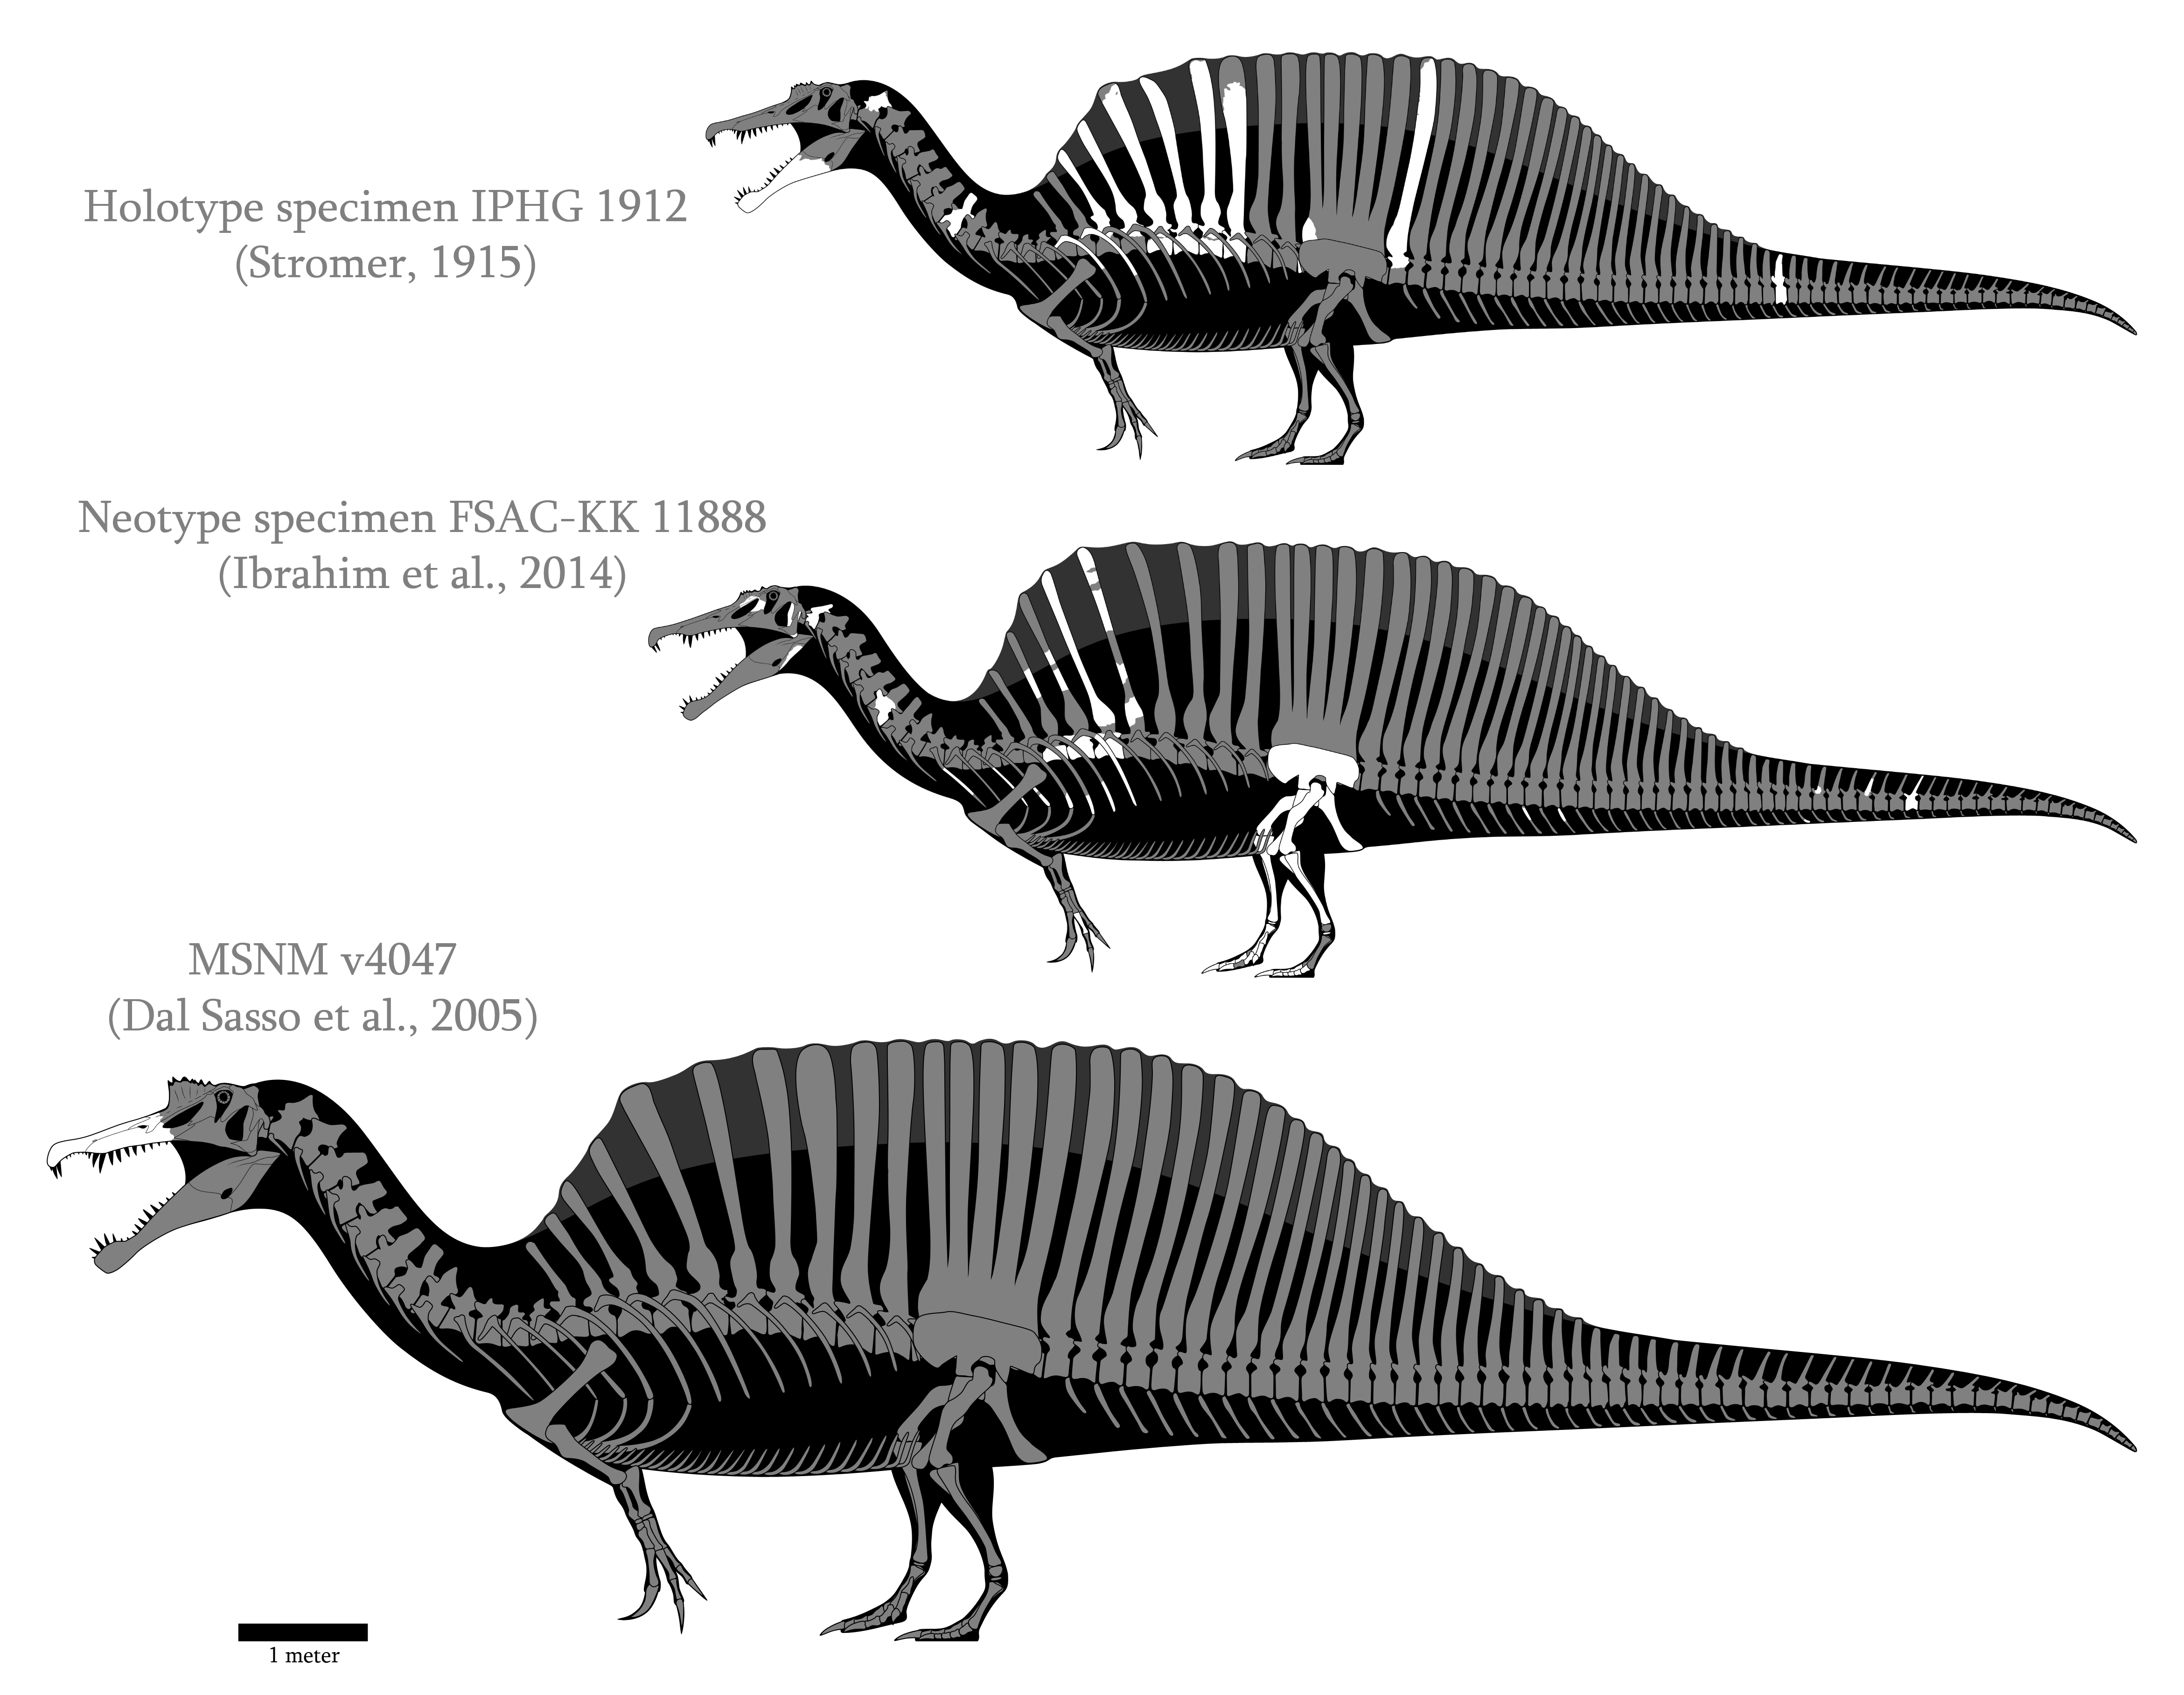 Spinosaurus aegyptiacus skeletals (2014-2017)